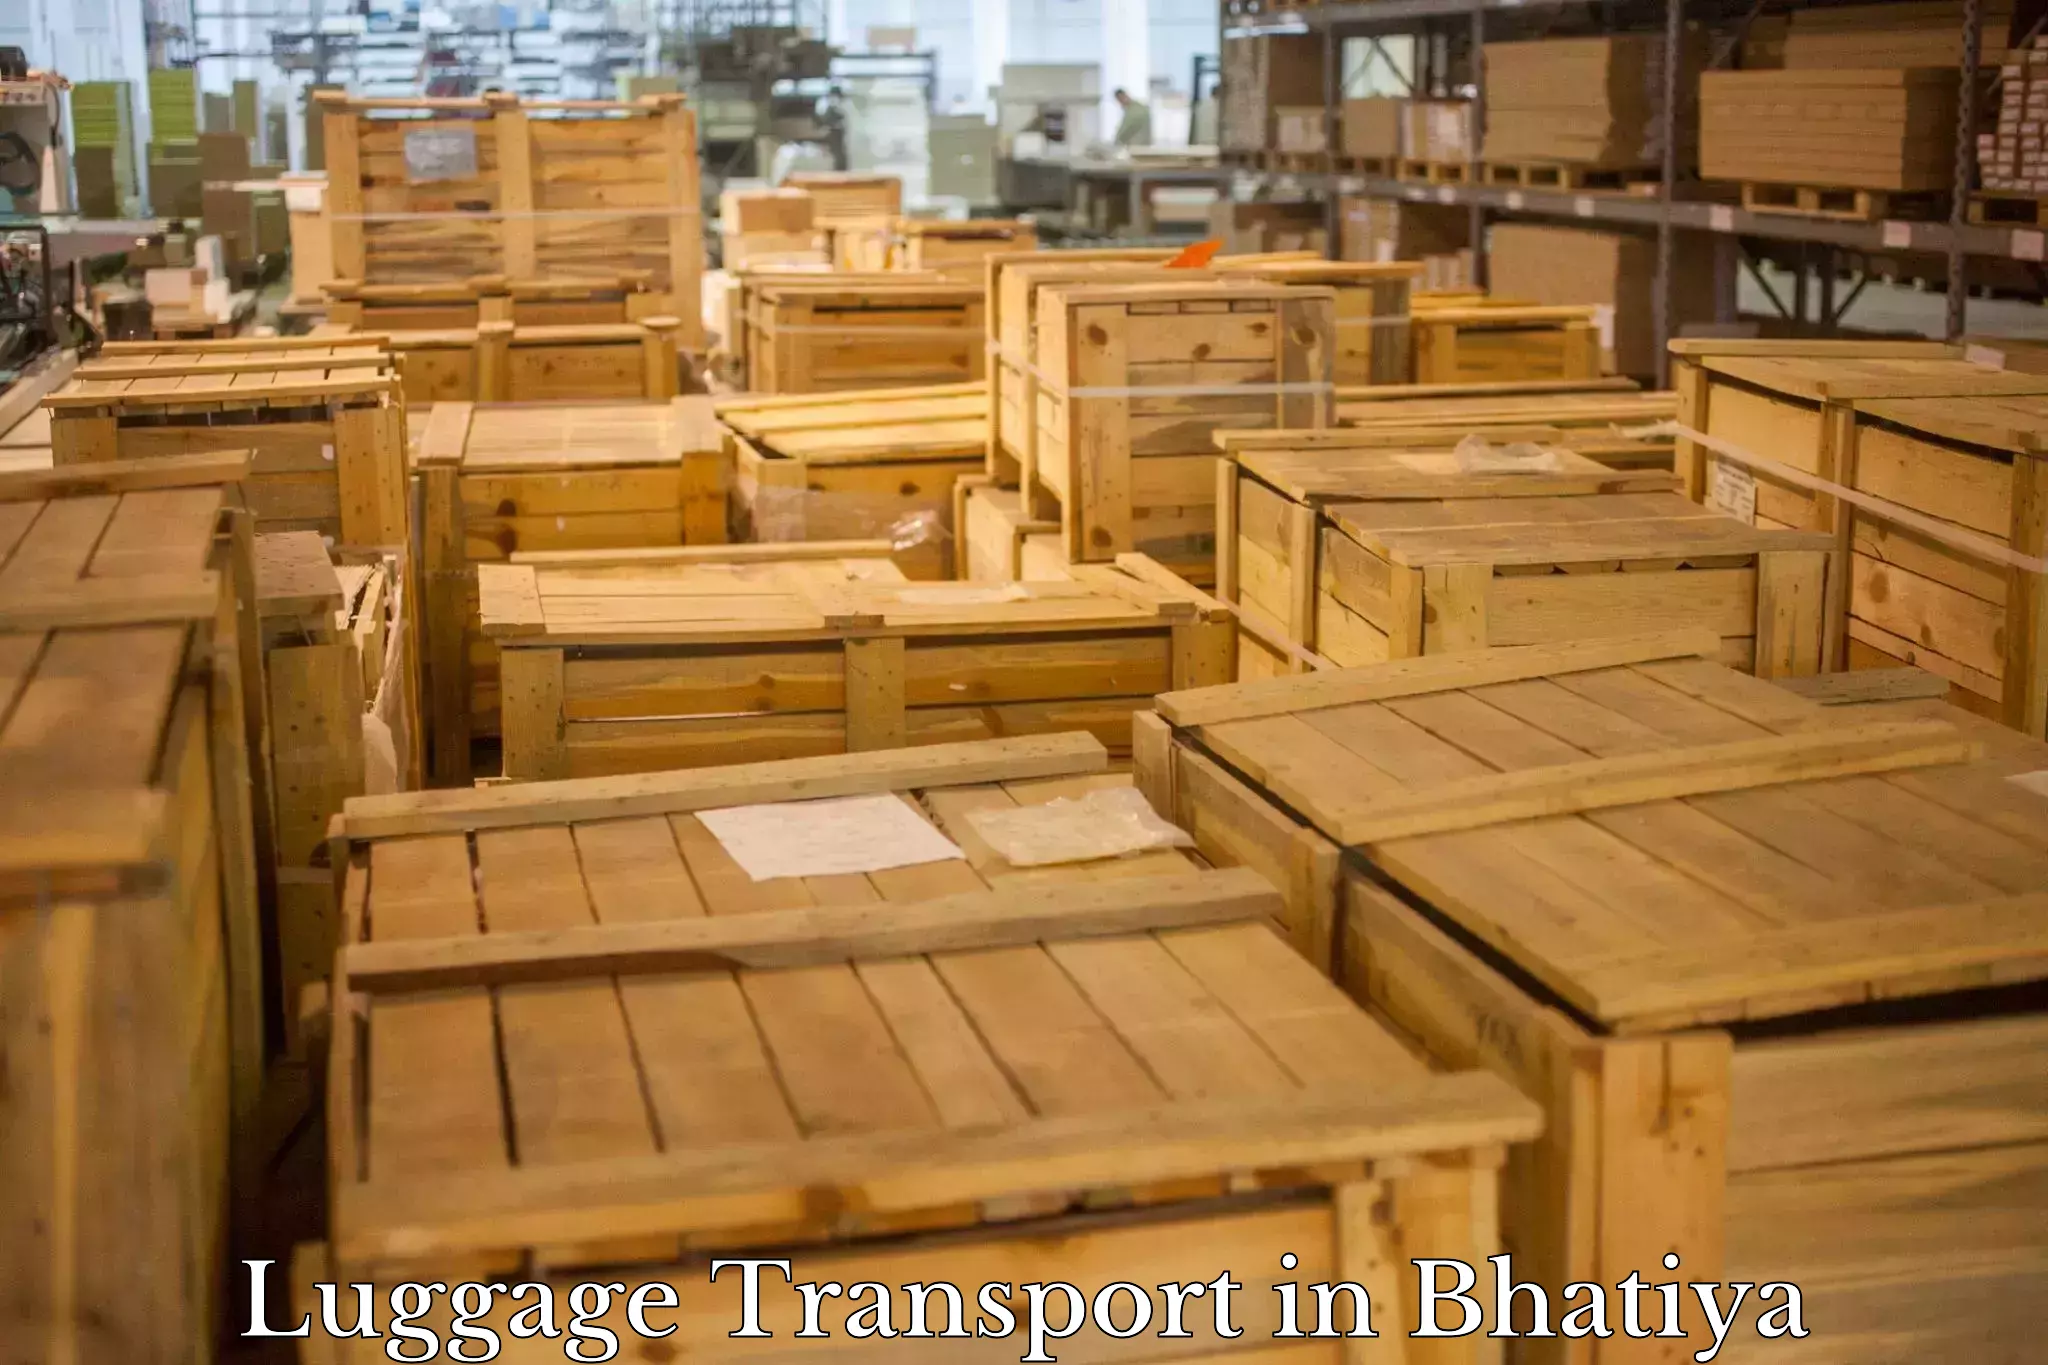 Luggage transit service in Bhatiya